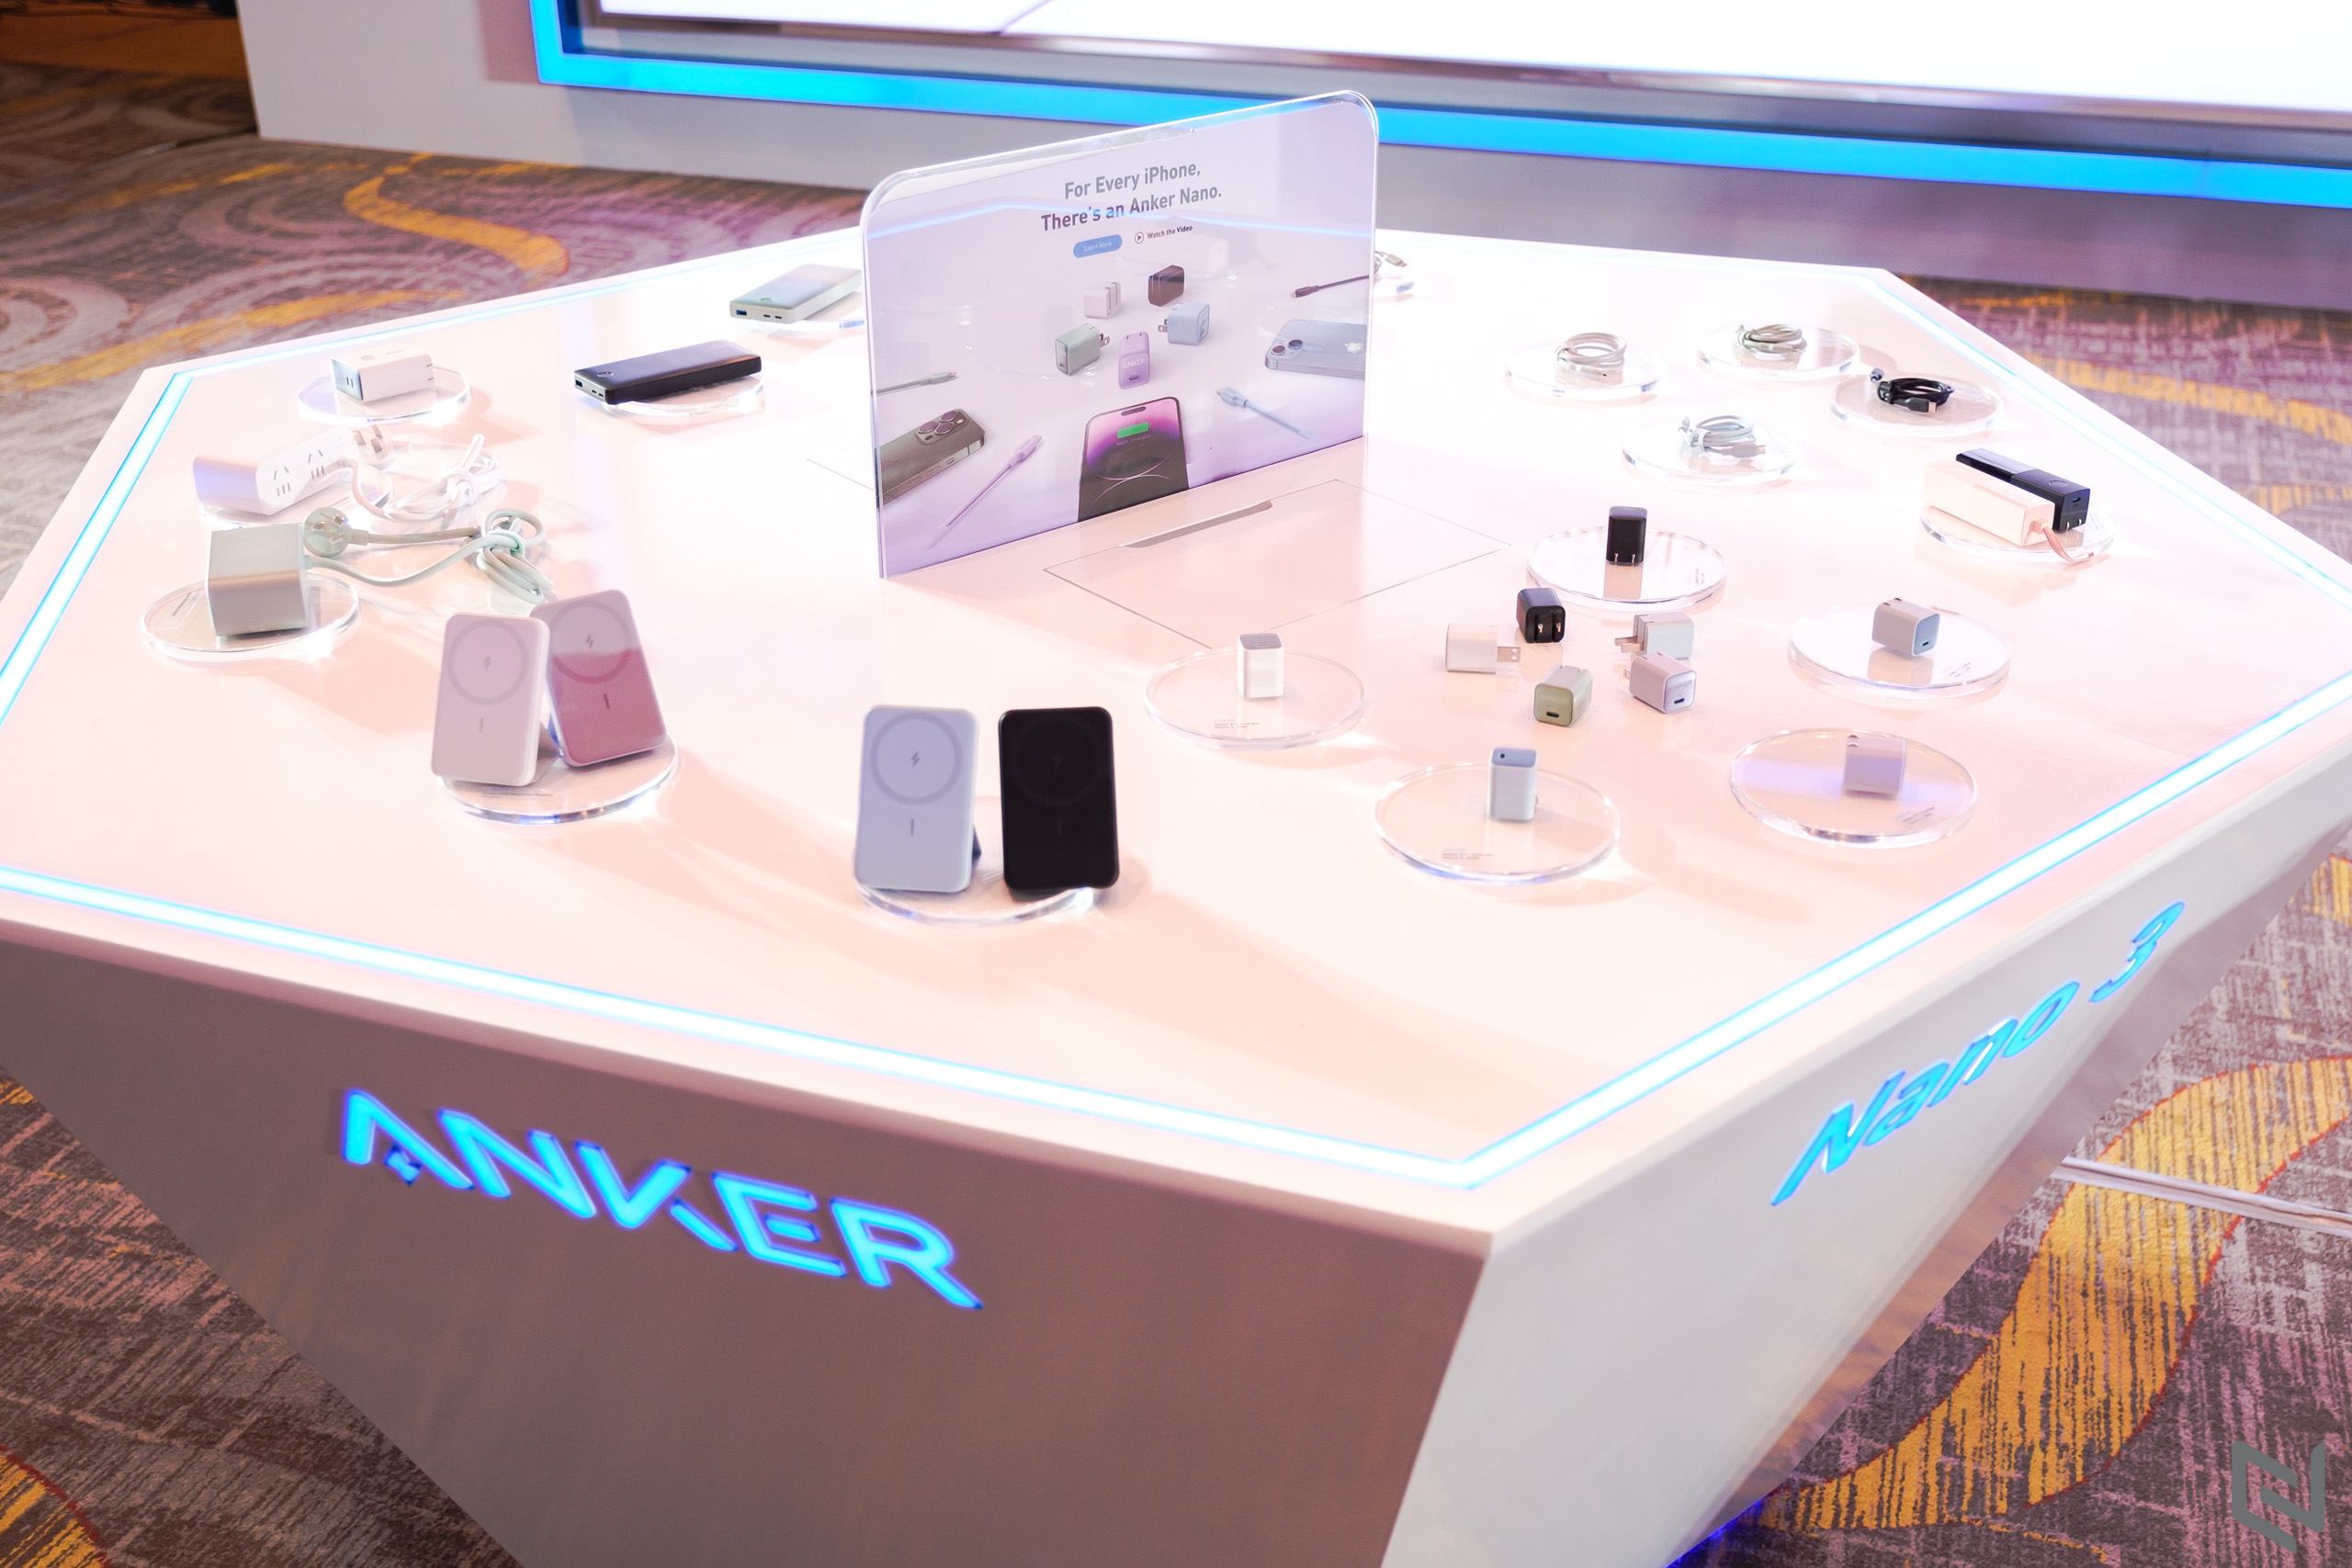 Anker giới thiệu ba dòng sản phẩm mới đến người tiêu dùng Việt Nam nhân dịp cuối năm